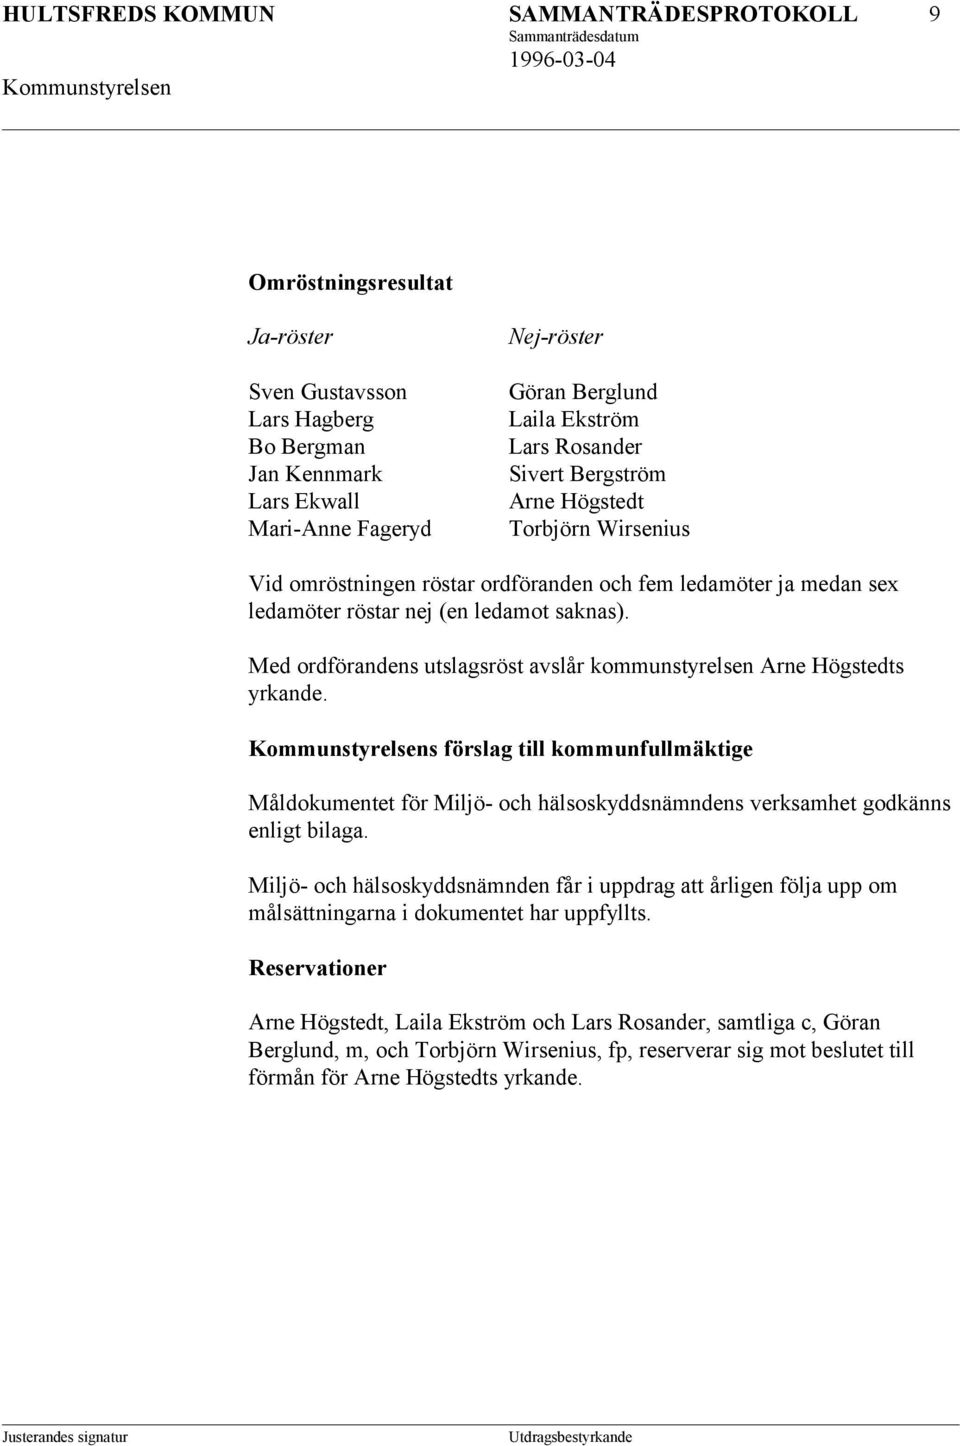 Med ordförandens utslagsröst avslår kommunstyrelsen Arne Högstedts yrkande. s förslag till kommunfullmäktige Måldokumentet för Miljö- och hälsoskyddsnämndens verksamhet godkänns enligt bilaga.